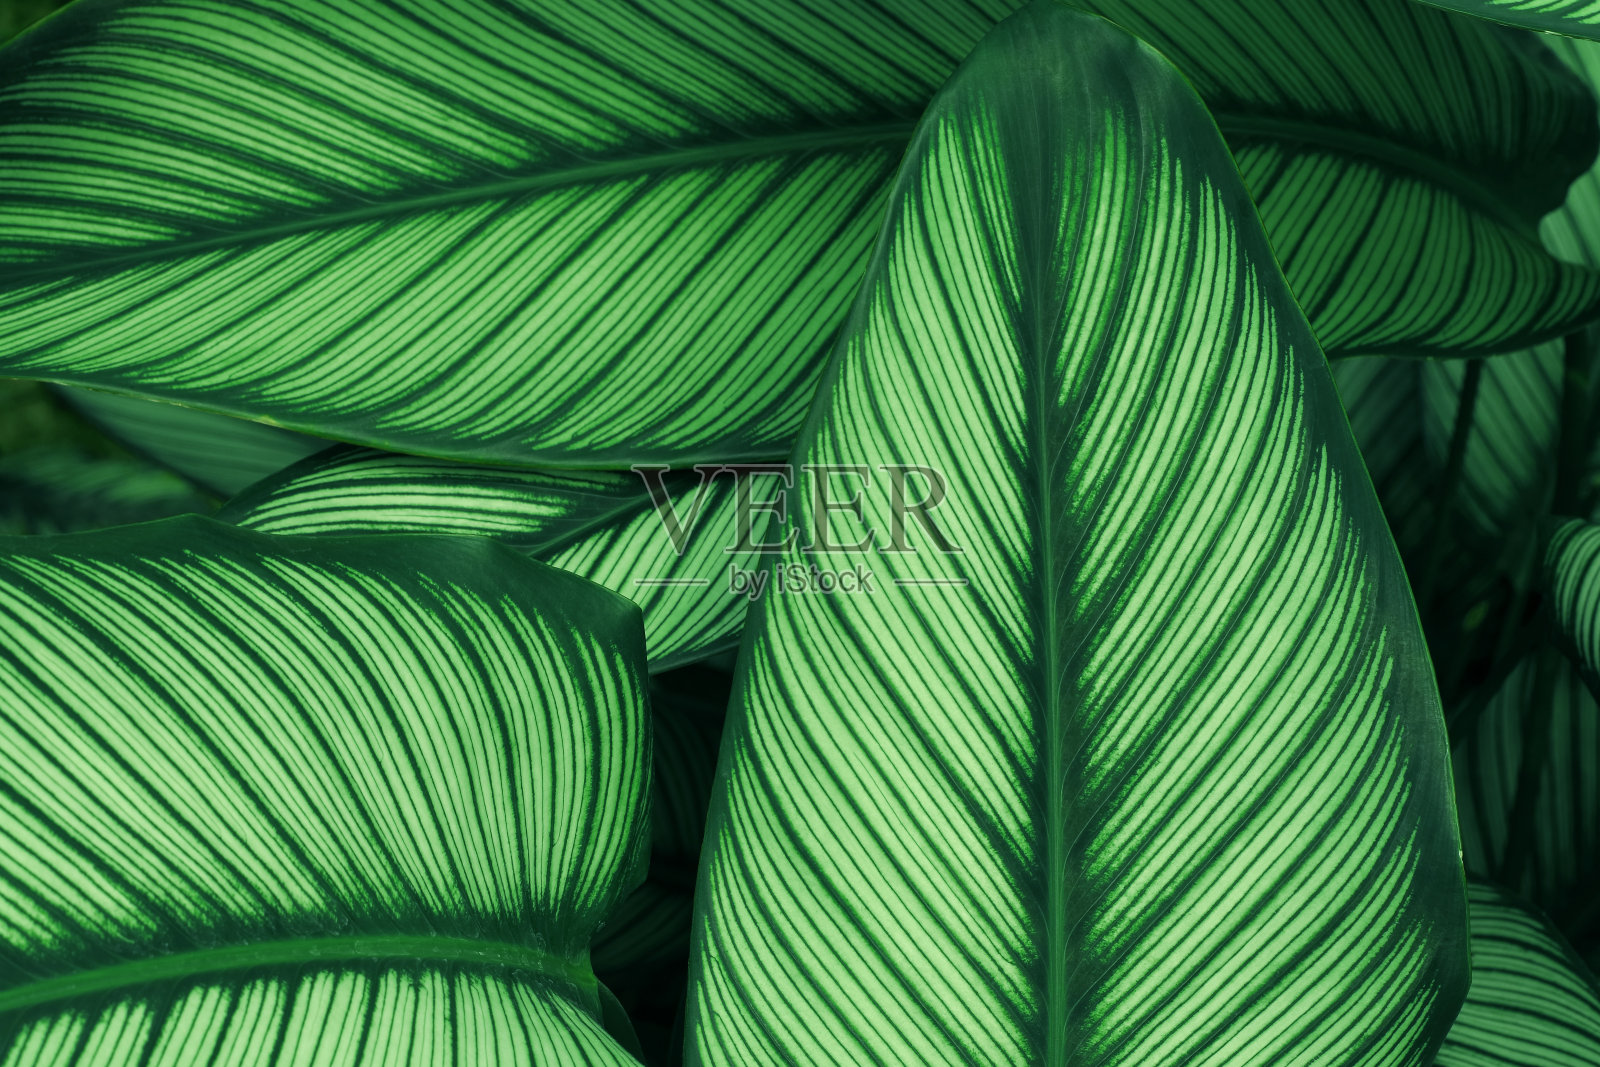 以热带森林中的绿叶纹理为背景，设计生态自然概念风格的艺术作品。照片摄影图片